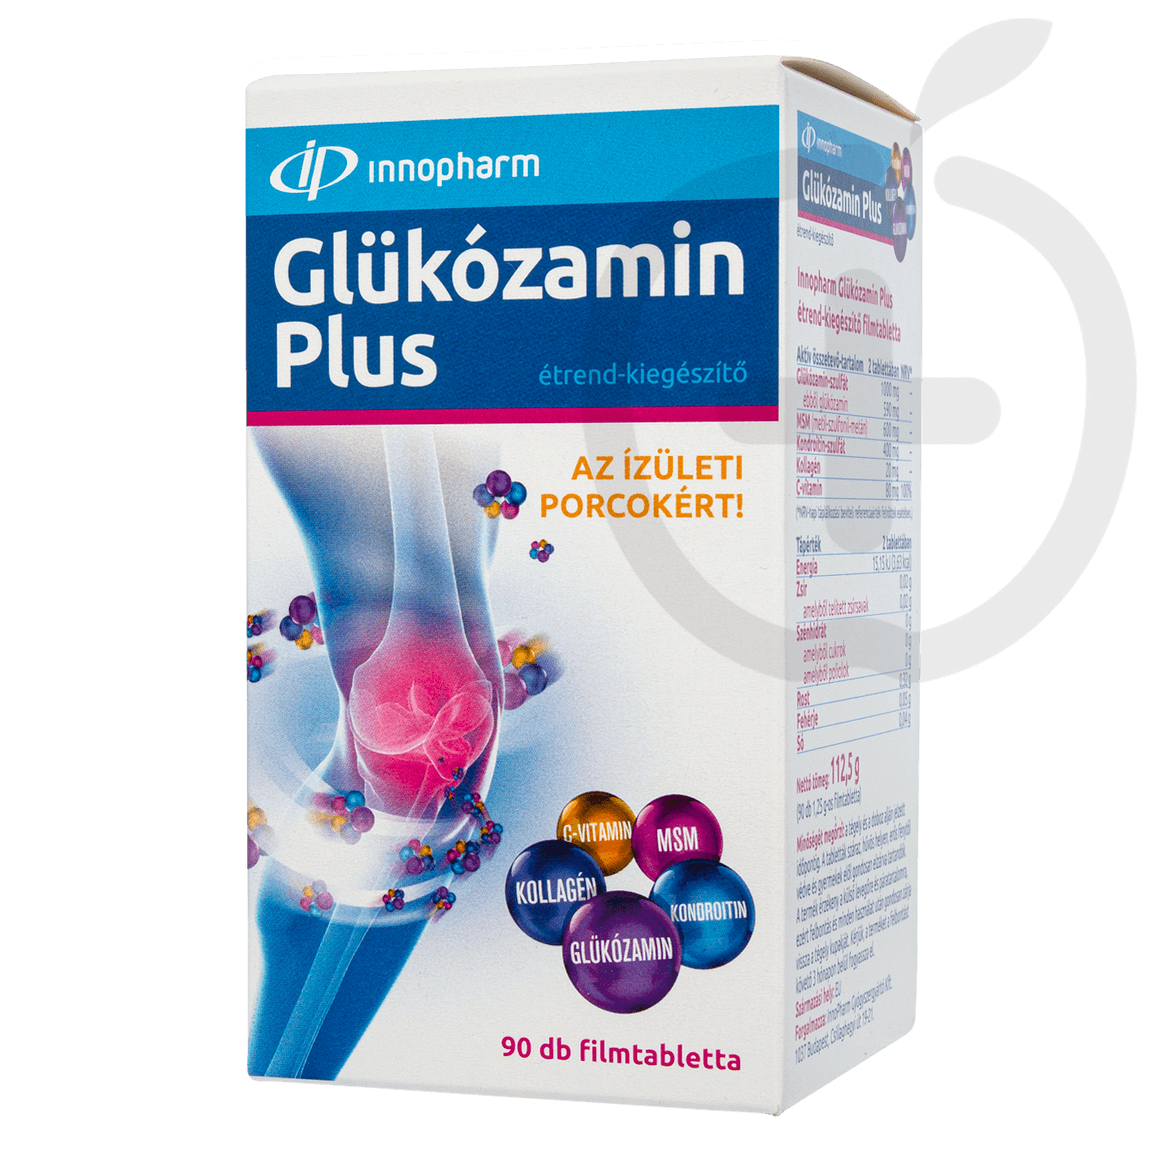 Innopharm Glükózamin Plus étrend-kiegészítő filmtabletta